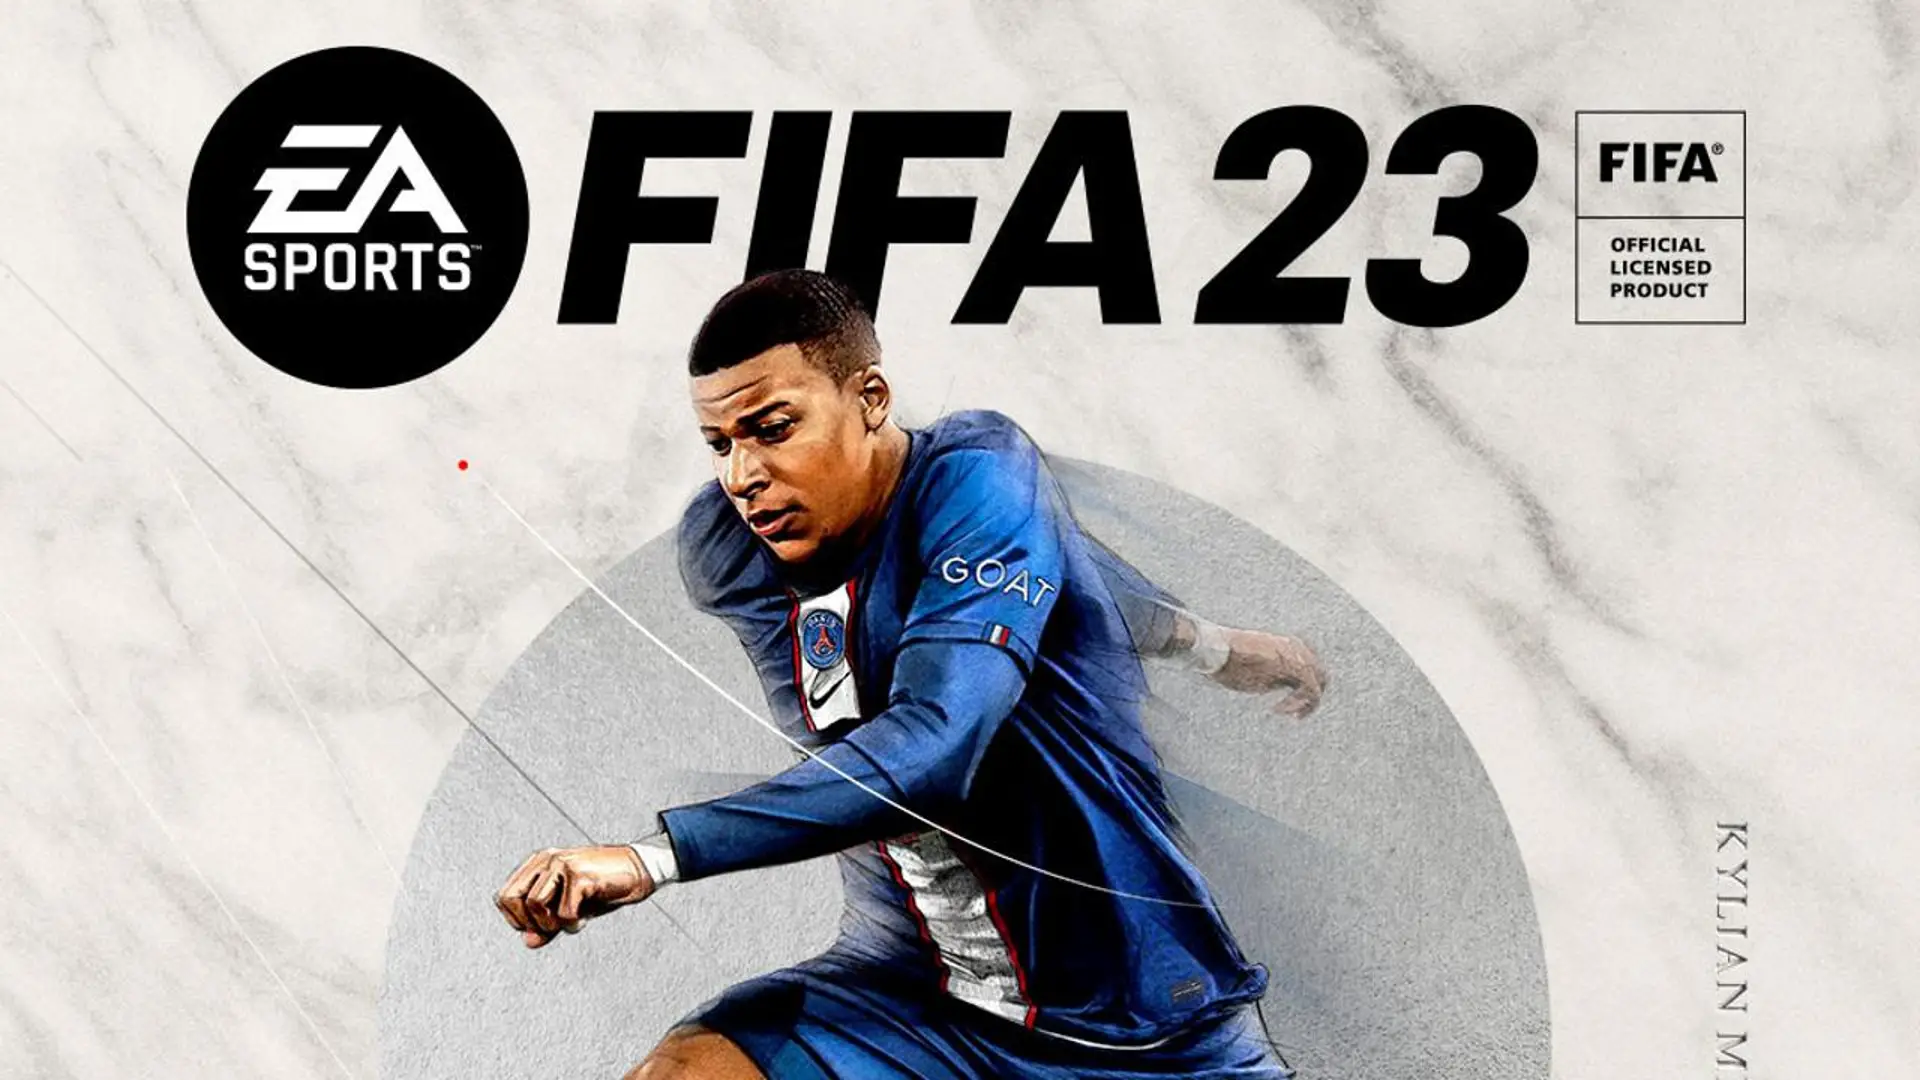 FIFA 23 download failed